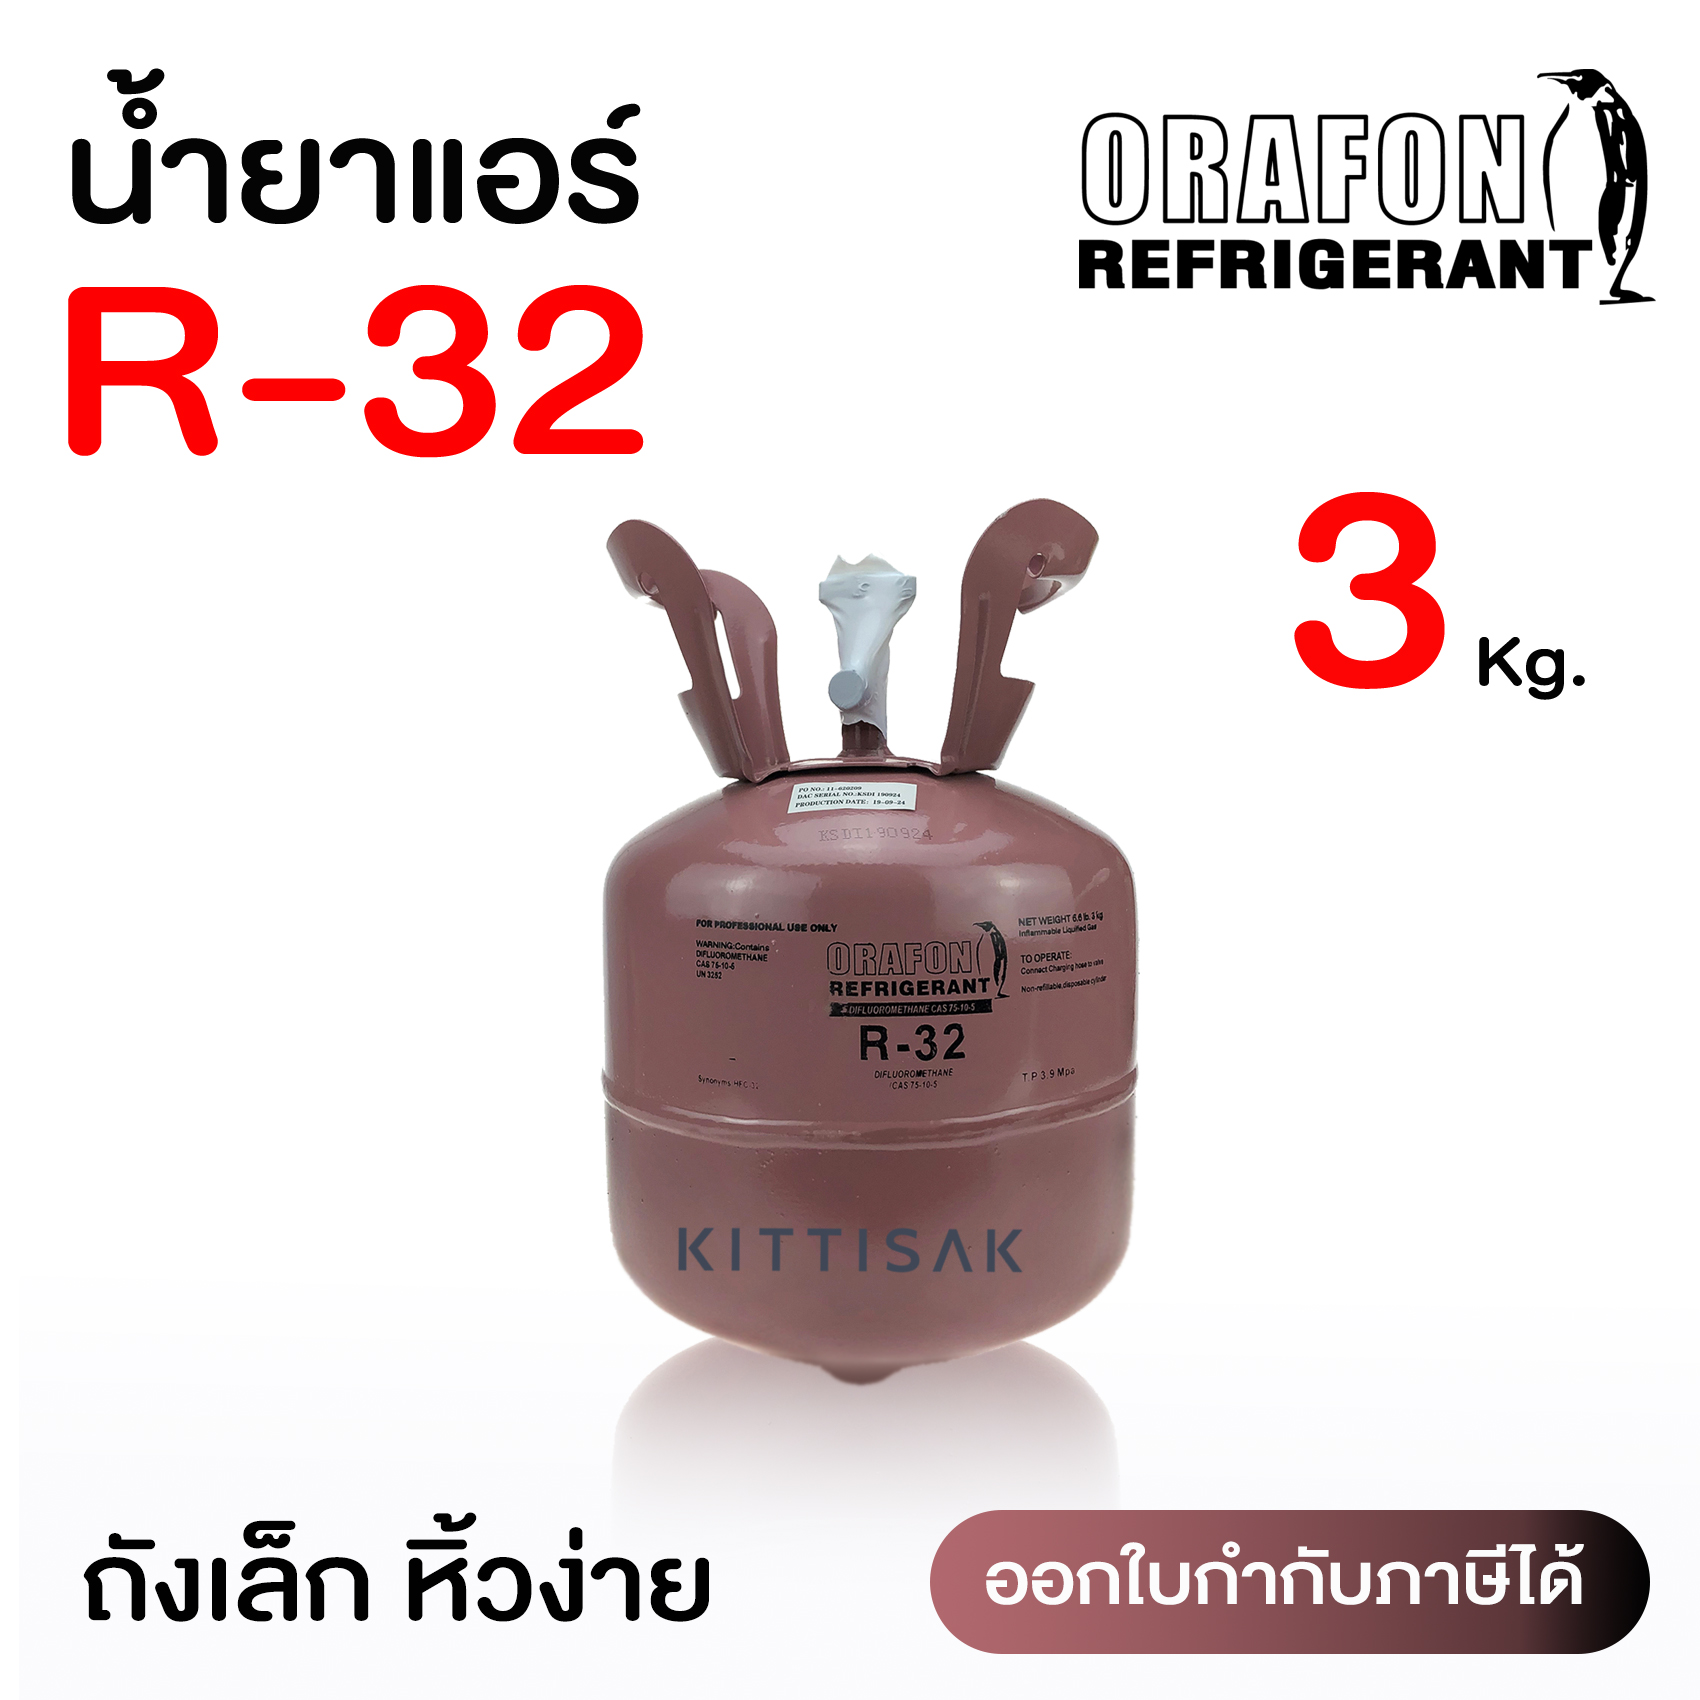 น้ำยาแอร์ R32 ยี่ห้อ ORAFON ขนาด 3 กก.